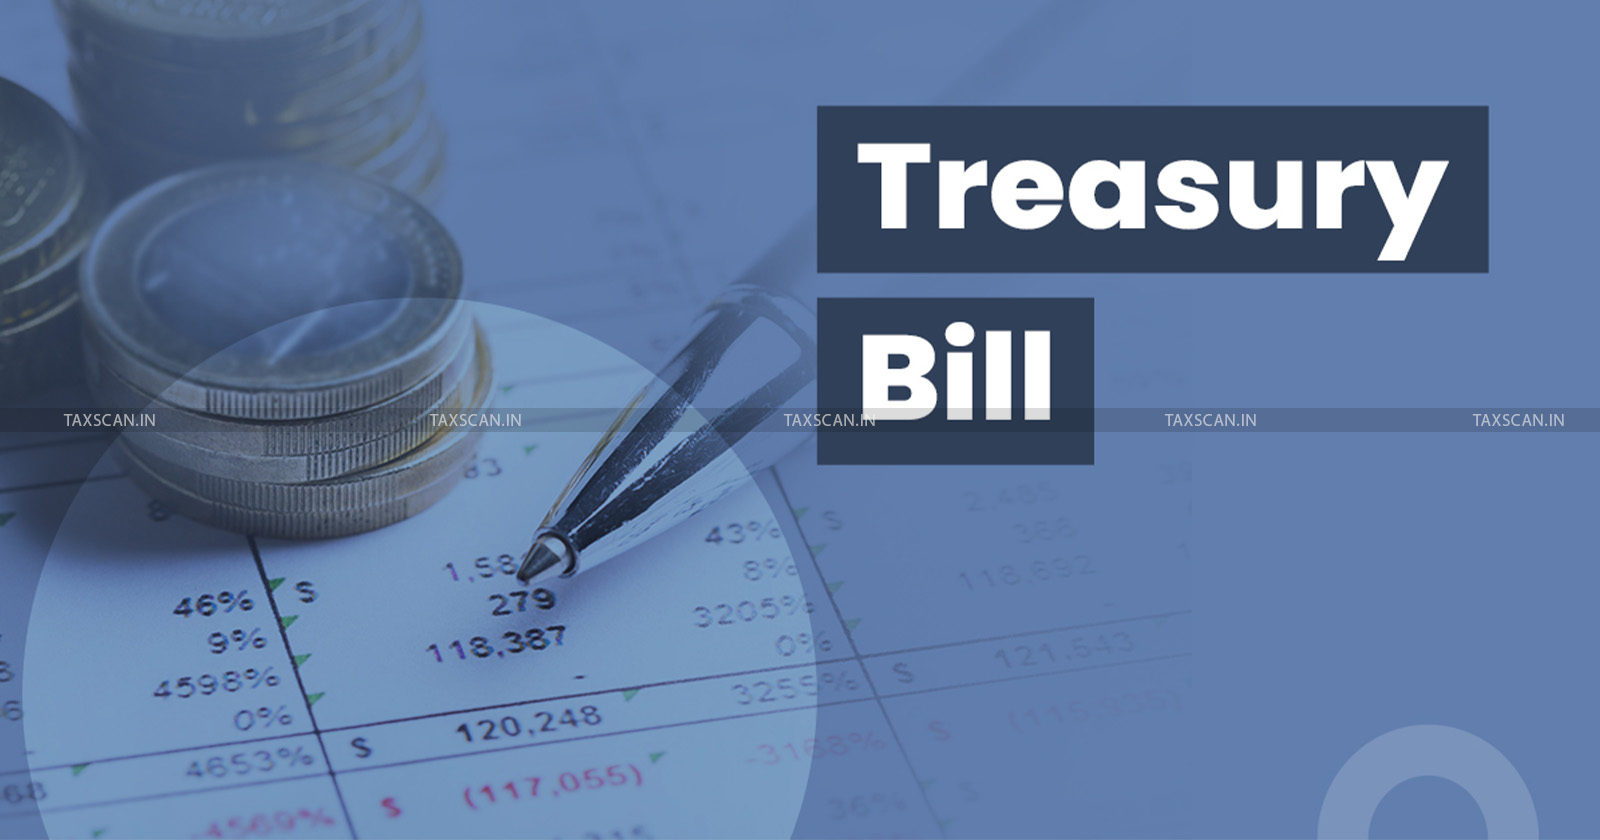 Treasury bill redemption tax - Income Tax - ITAT Mumbai - Capital gain - Surplus taxation on Treasury bill - taxscan